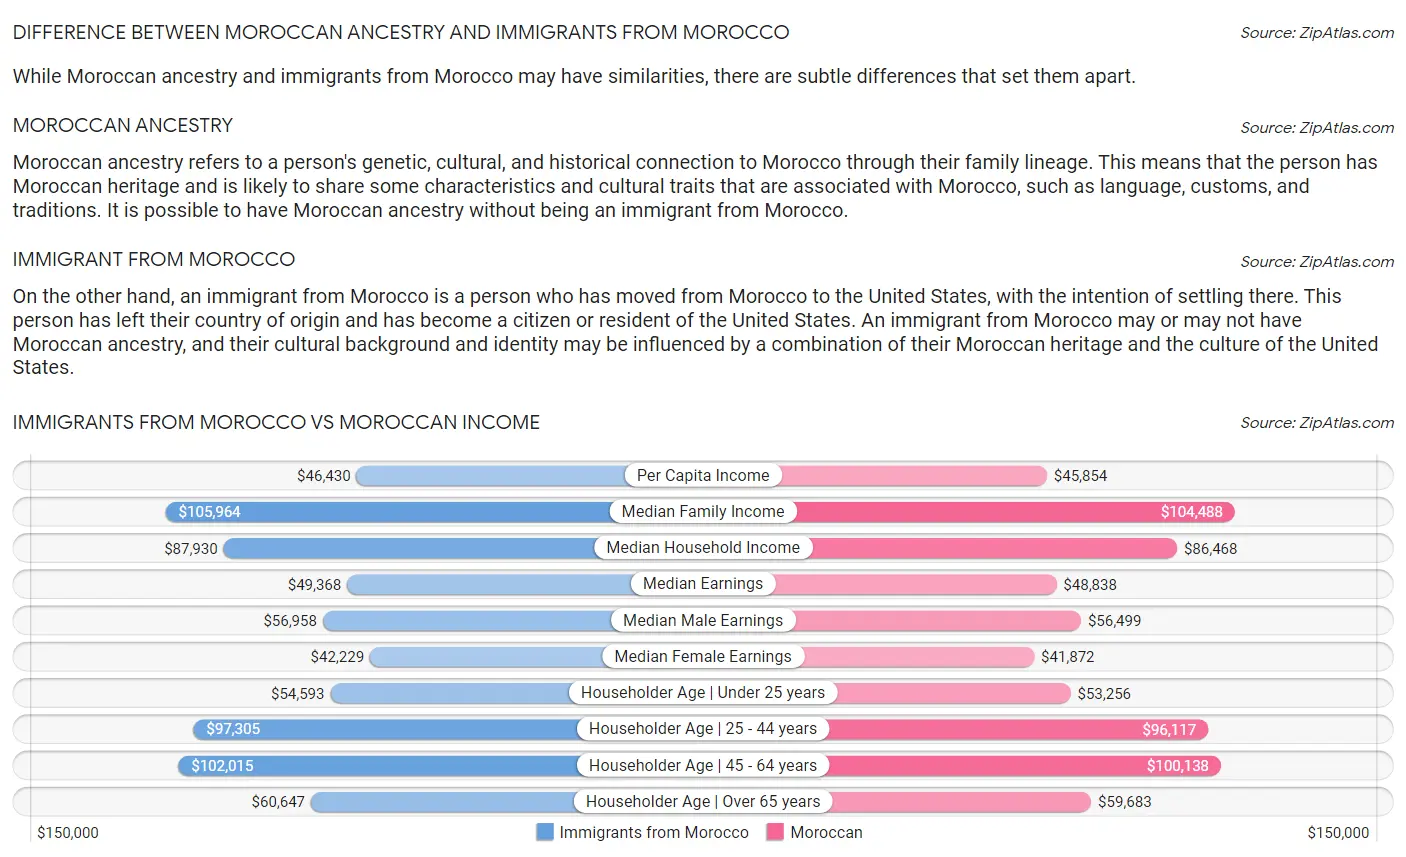 Immigrants from Morocco vs Moroccan Income